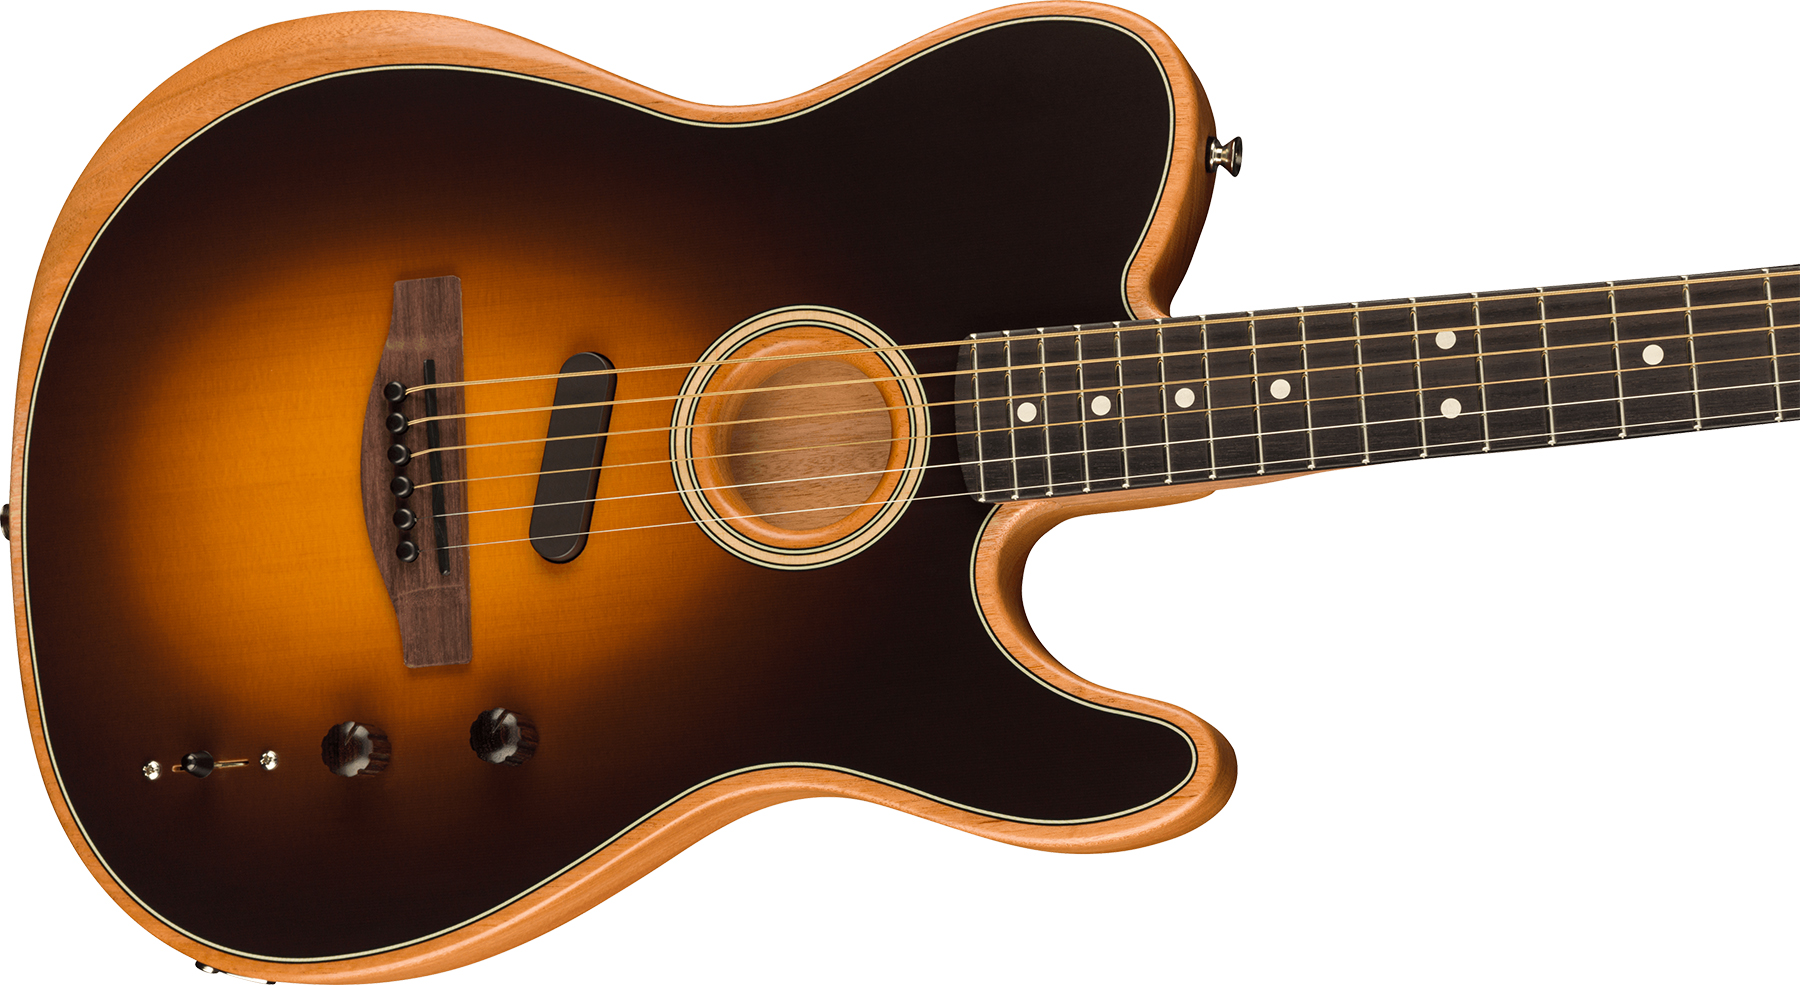 Fender Acoustasonic Tele Player Mex Epicea Acajou Rw - Shadow Burst - Electro acoustic guitar - Variation 2